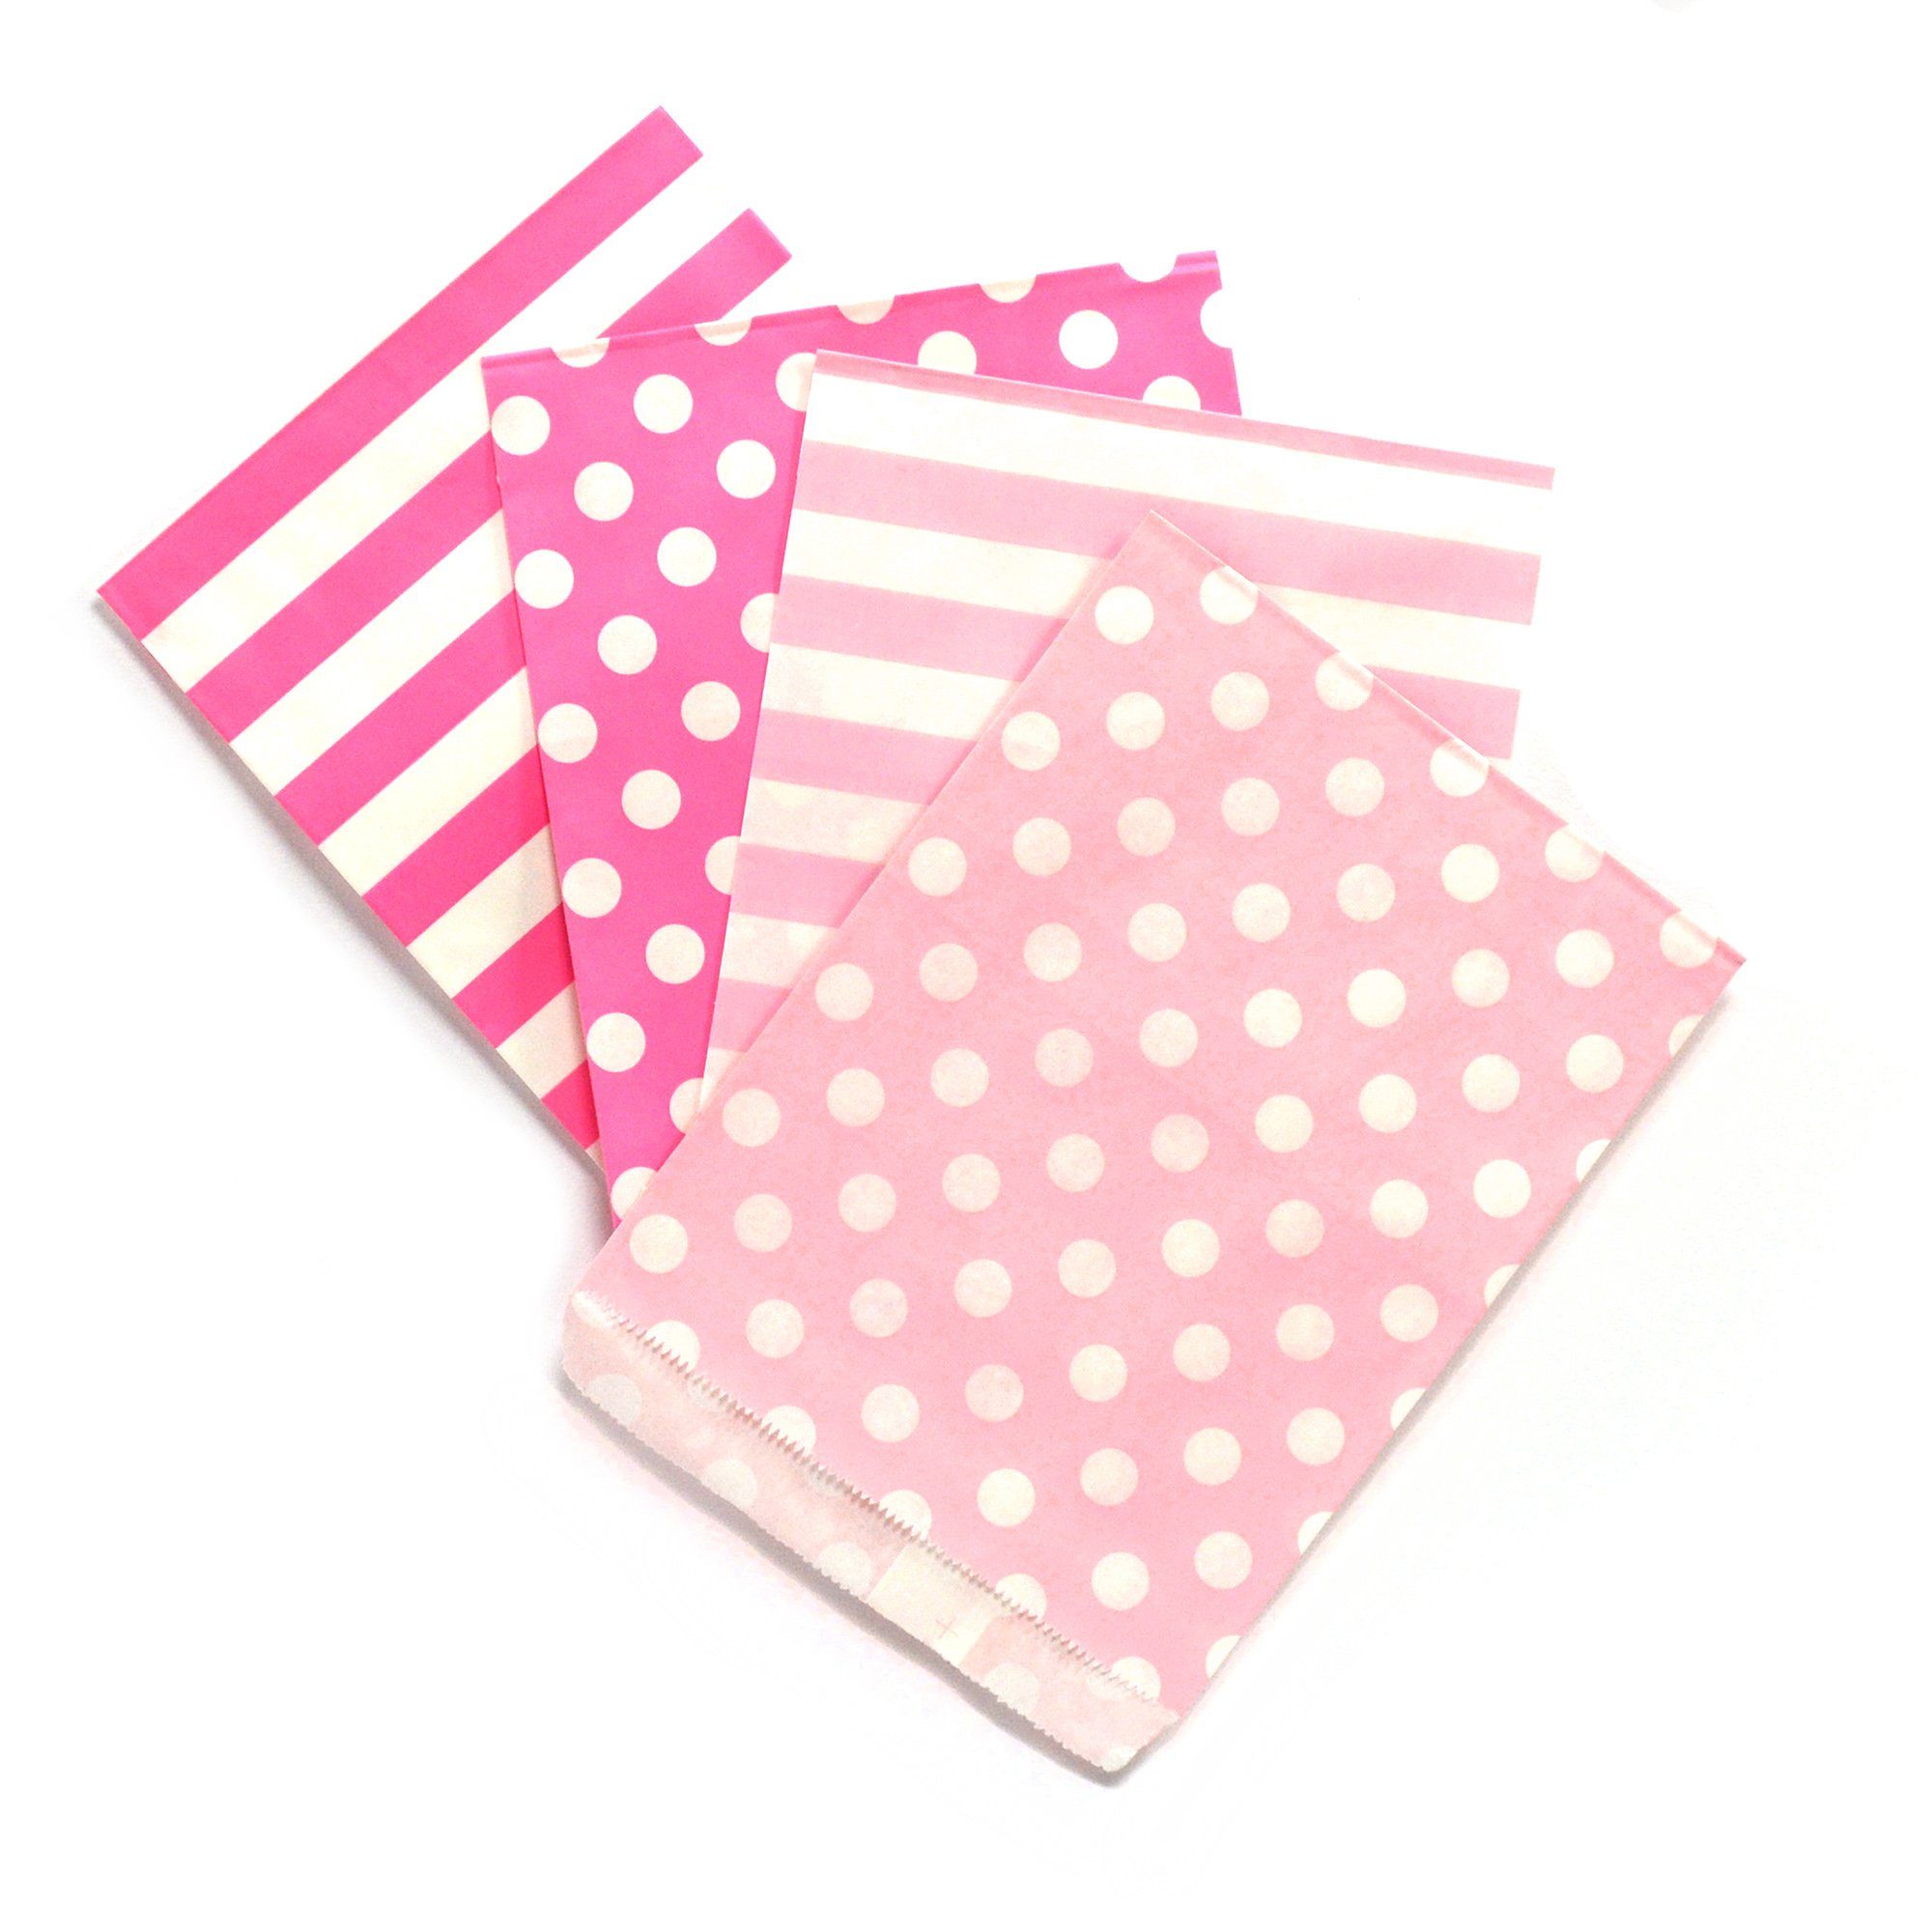 Frau WUNDERVoll Papierdekoration 100 PAPIERTÜTEN 4x25 Stück pink Streifen, pink Punkte, rosa Streifen